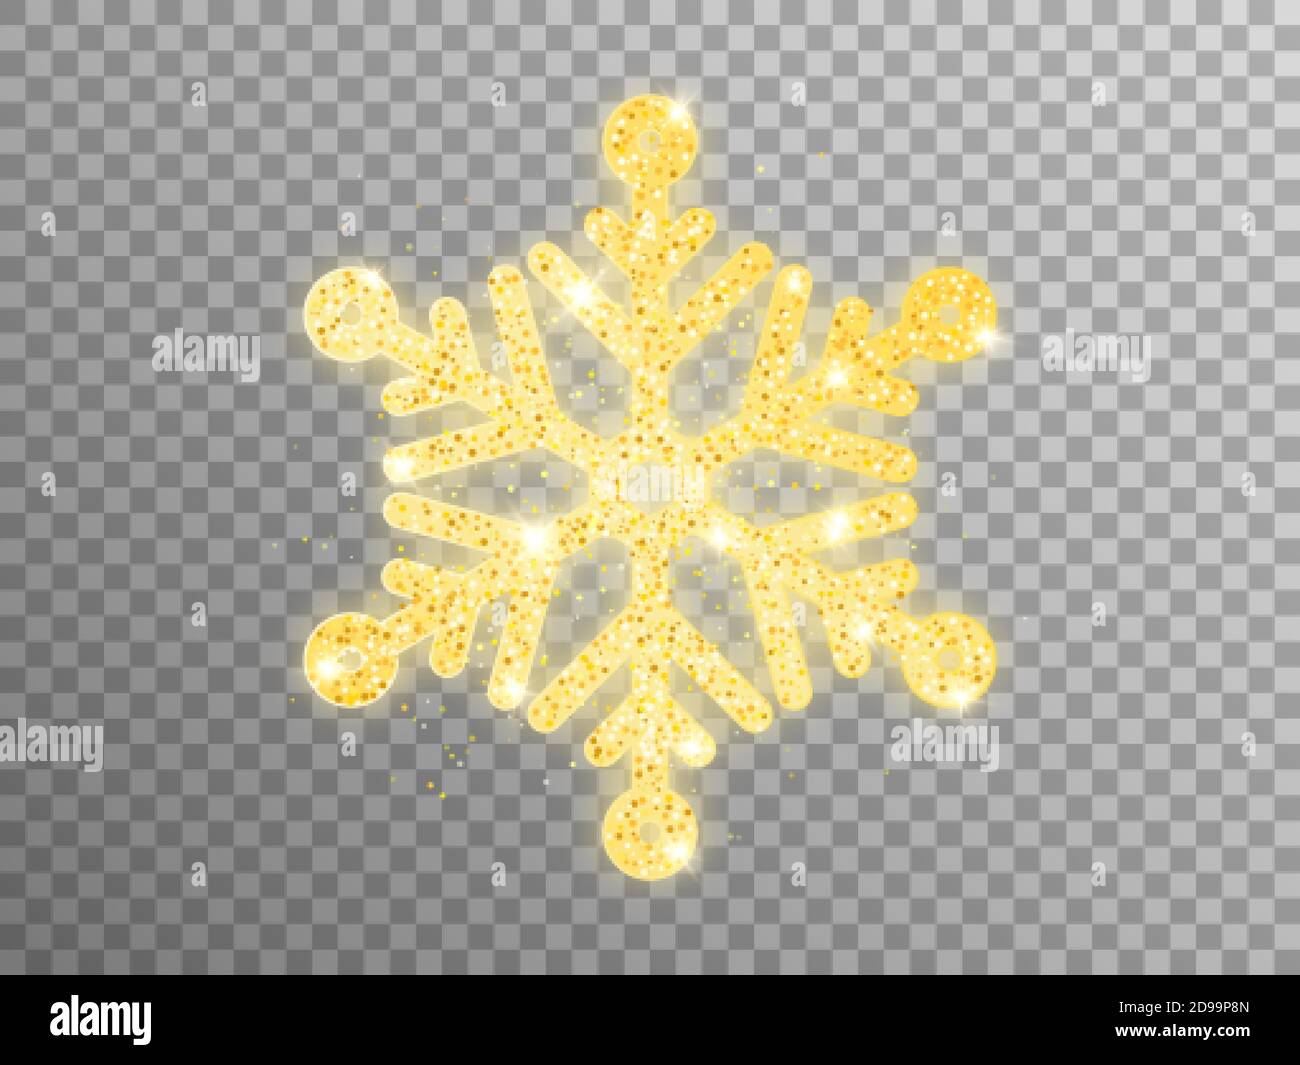 Goldene Schneeflocke auf transparentem Hintergrund. Weihnachtliche Schnee-Element mit goldenem Glitzer. Grußkartenvorlage. Luxuriöse glühende Flocke mit Pulver. Vektor Stock Vektor